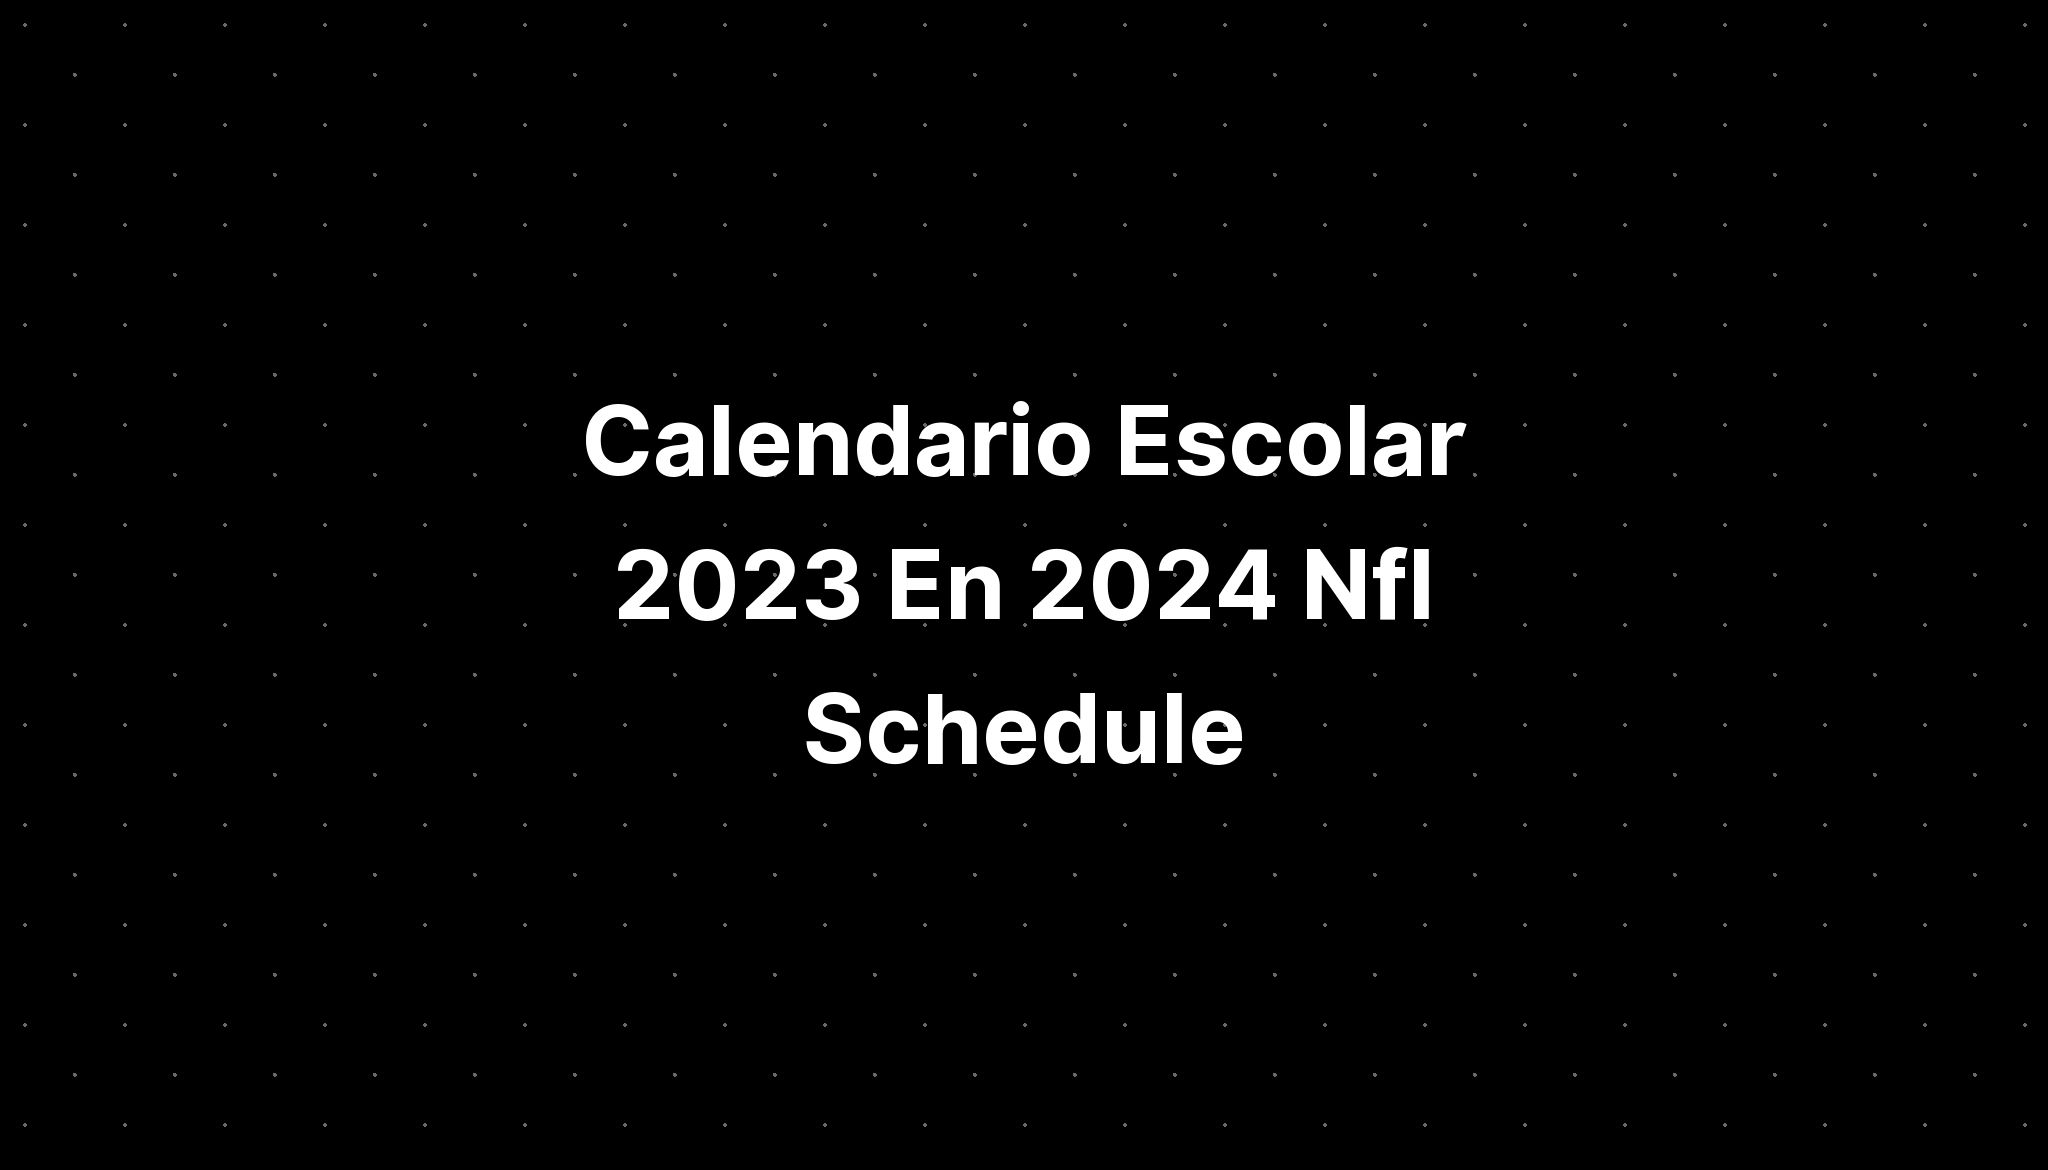 Calendario Escolar 2023 En 2024 Nfl Schedule IMAGESEE